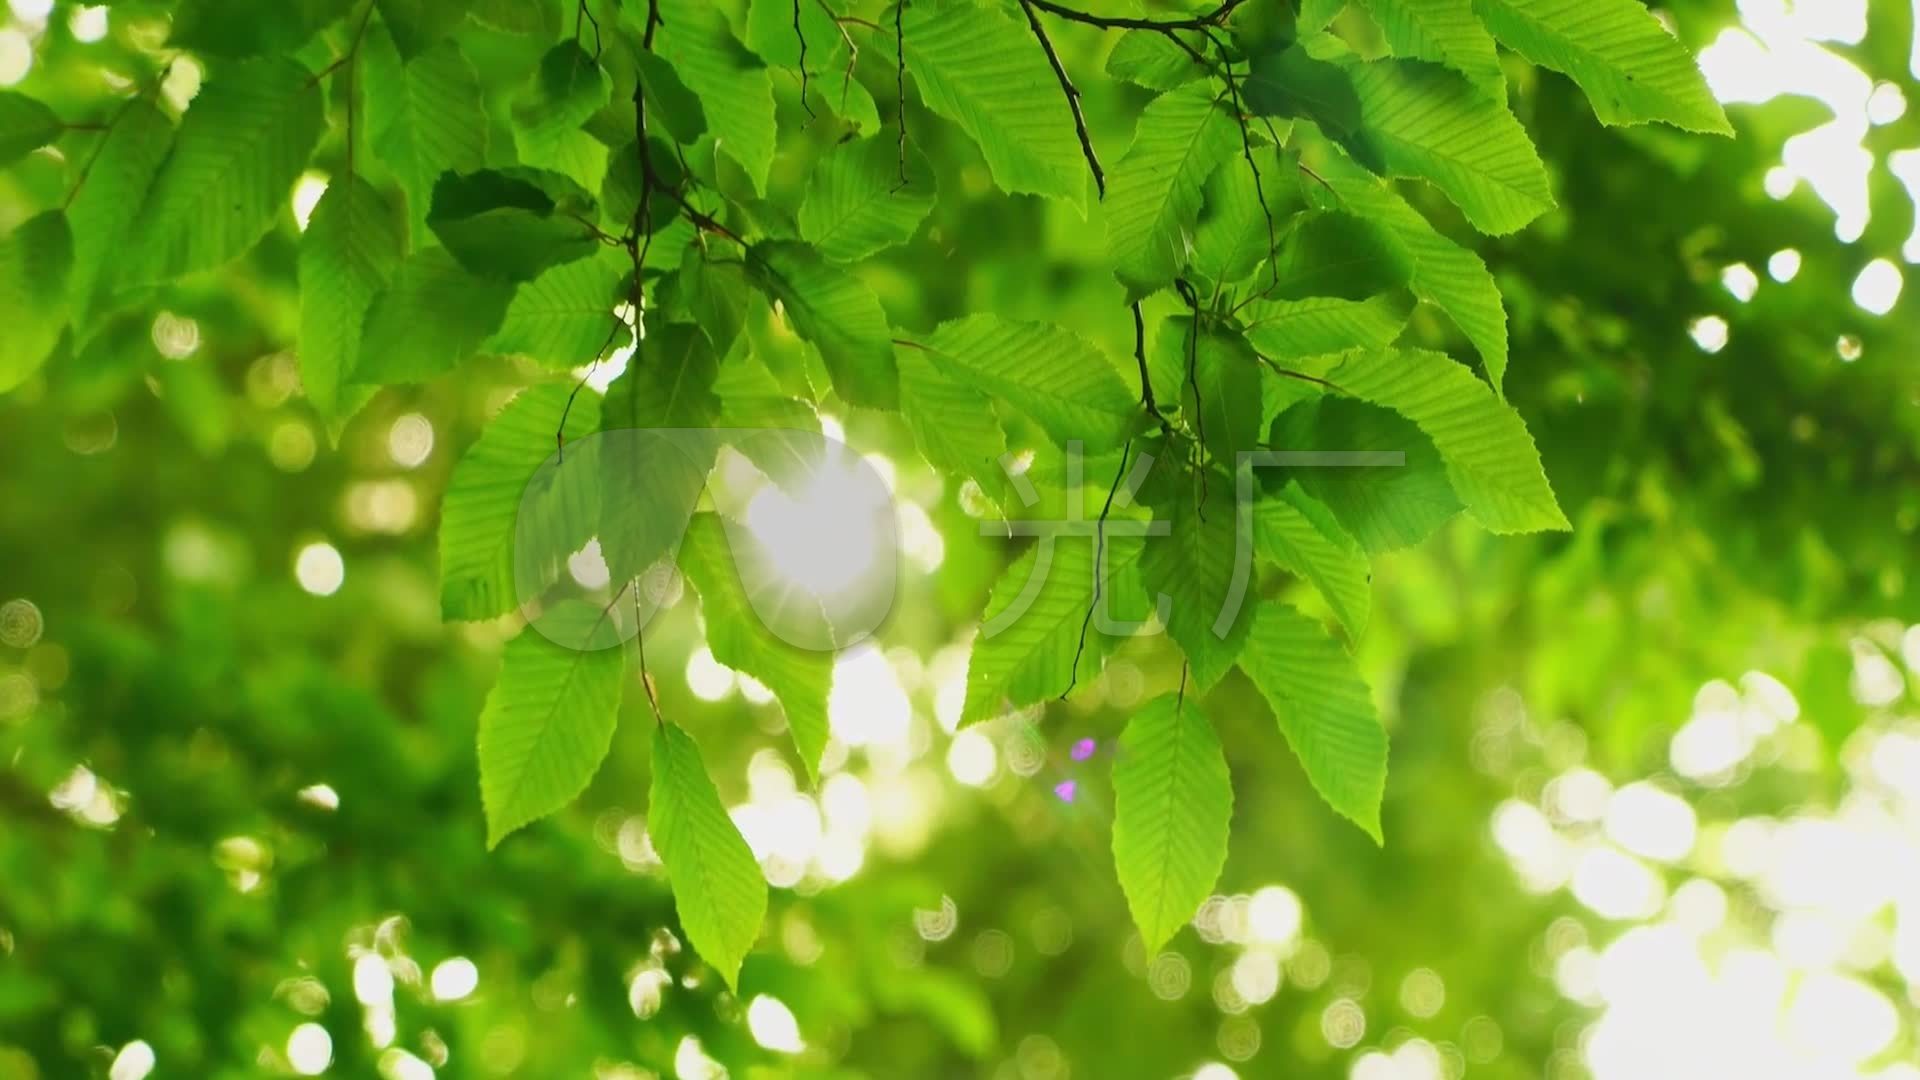 树叶,树枝,大自然,绿色,护眼4K壁纸-千叶网